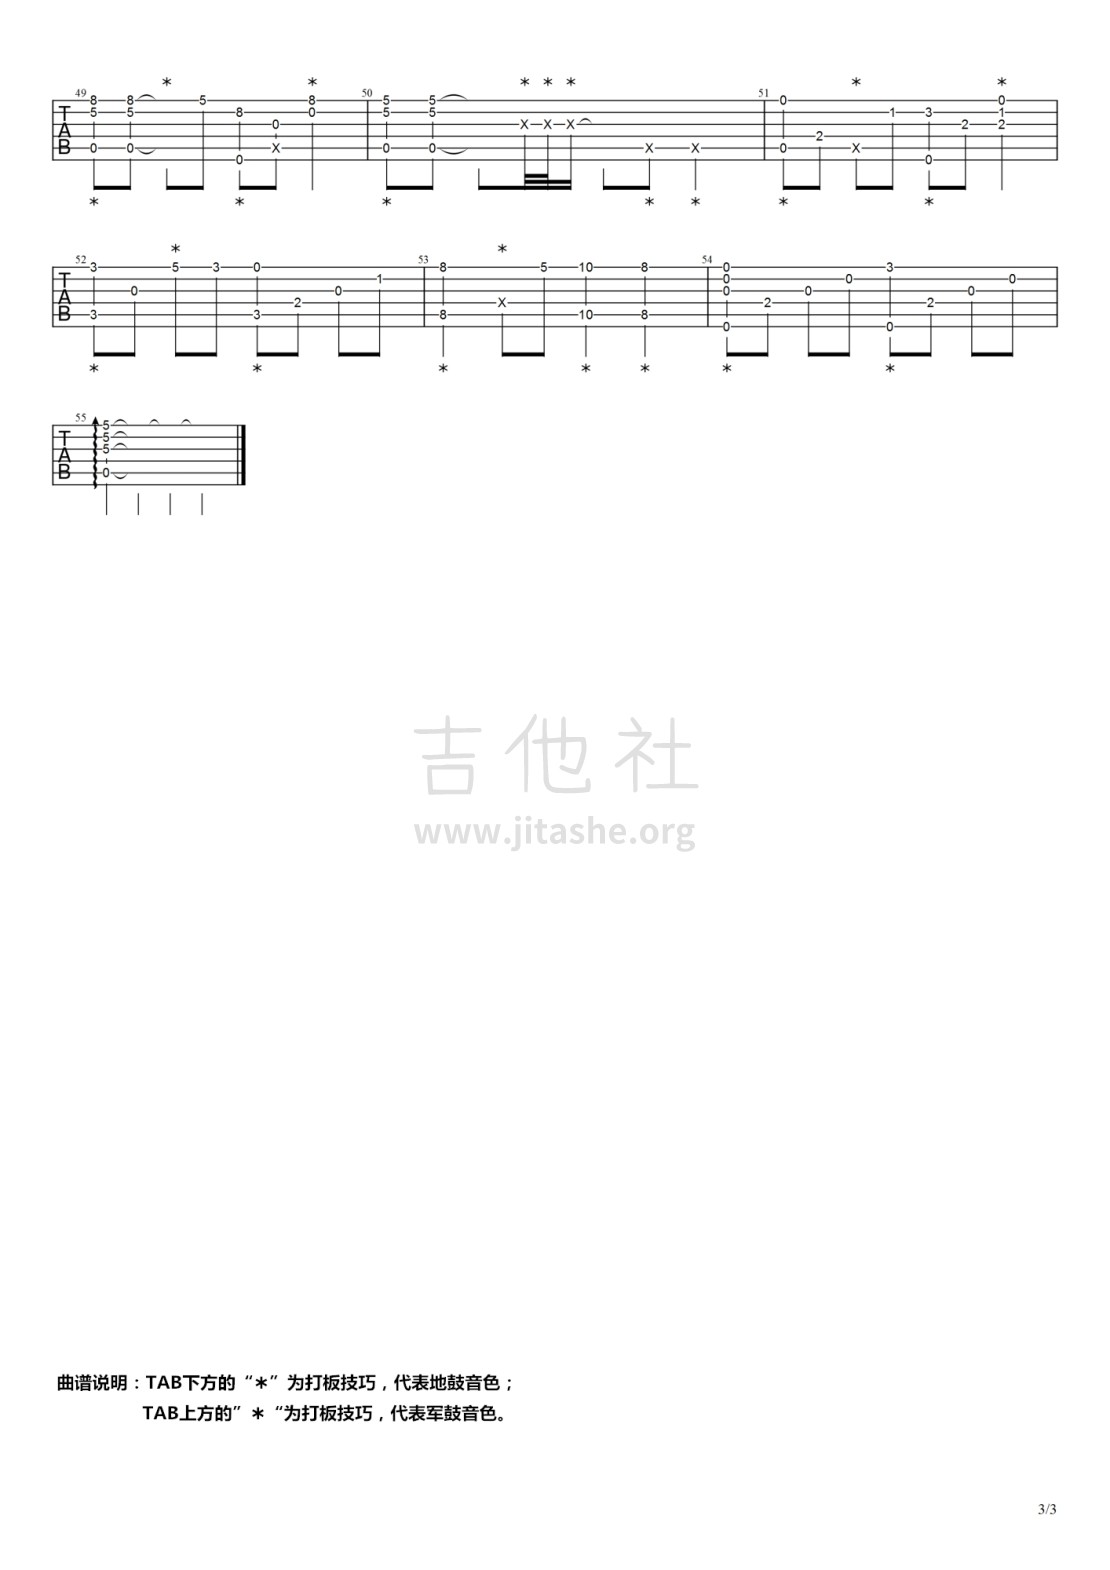 打印:我的中国心 + 万里长城永不倒（两首歌曲合并改编）吉他谱_张明敏_我的中国心03.jpg